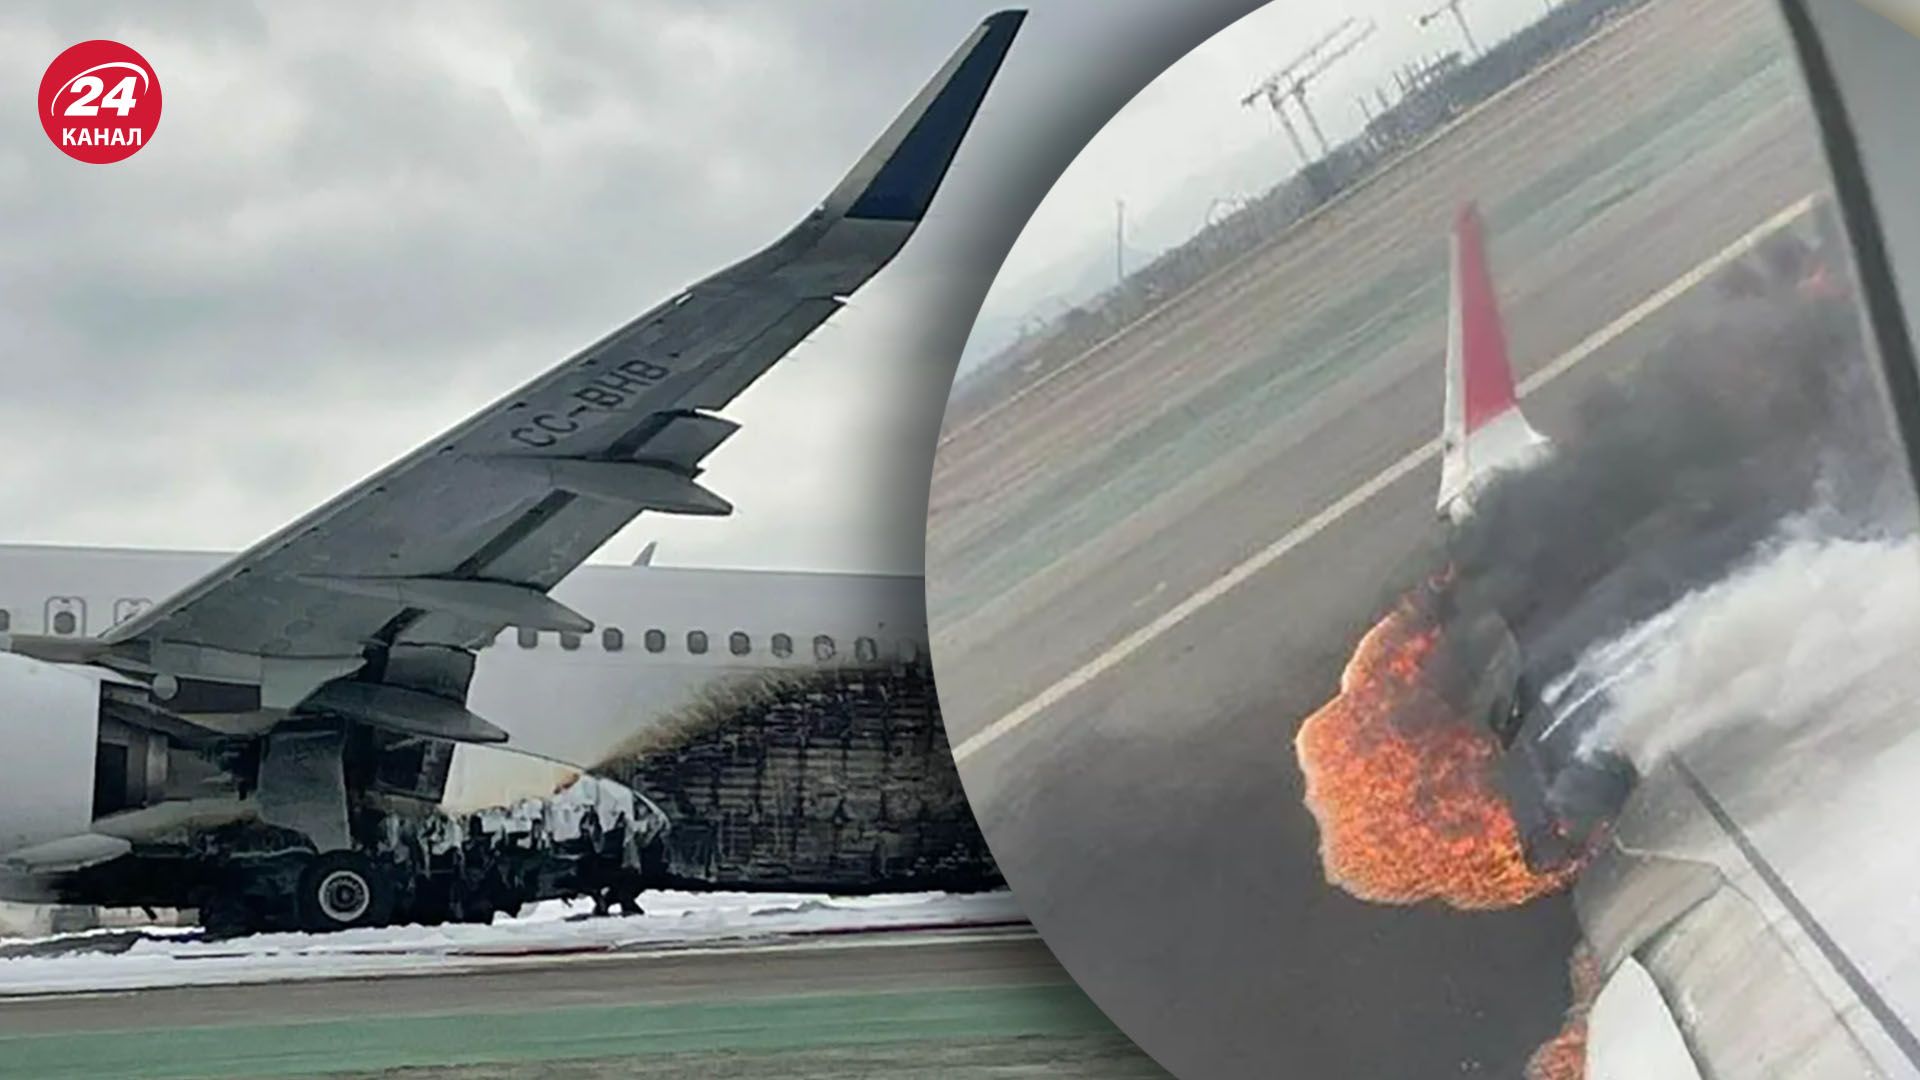 У Перу пасажирський літак зіштовхнувся з пожежною машиною - відео